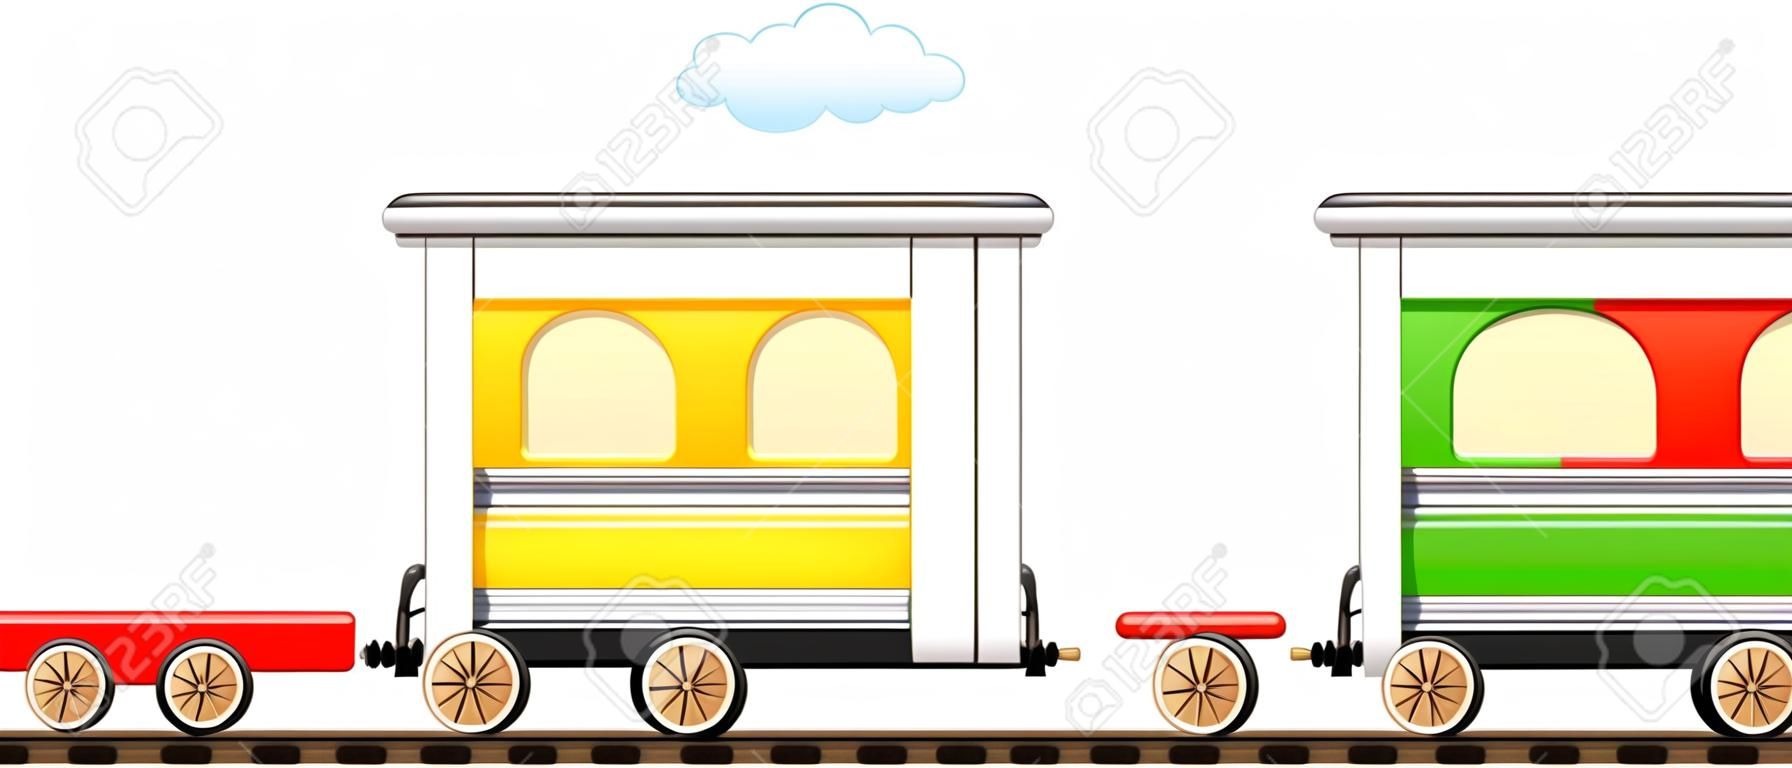 卡通孤立可爱列车与五颜六色的车厢在铁路